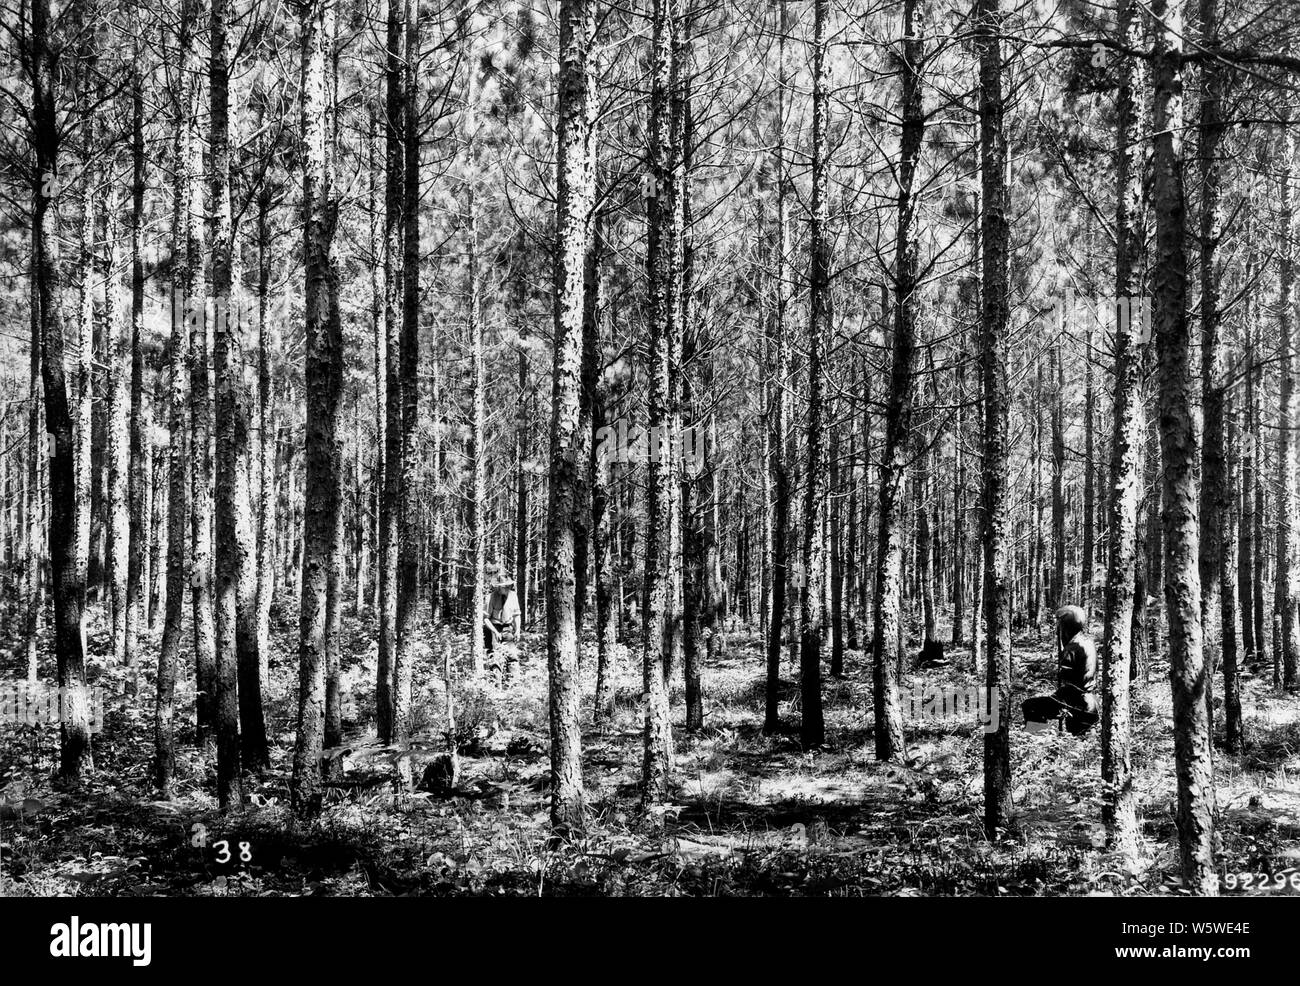 Photographie de peuplement de pin gris mixte dense ; Portée et contenu : sous-titre original : Stand de 35 ans dense de pin gris mixte cinq ans après l'éclaircie. Banque D'Images